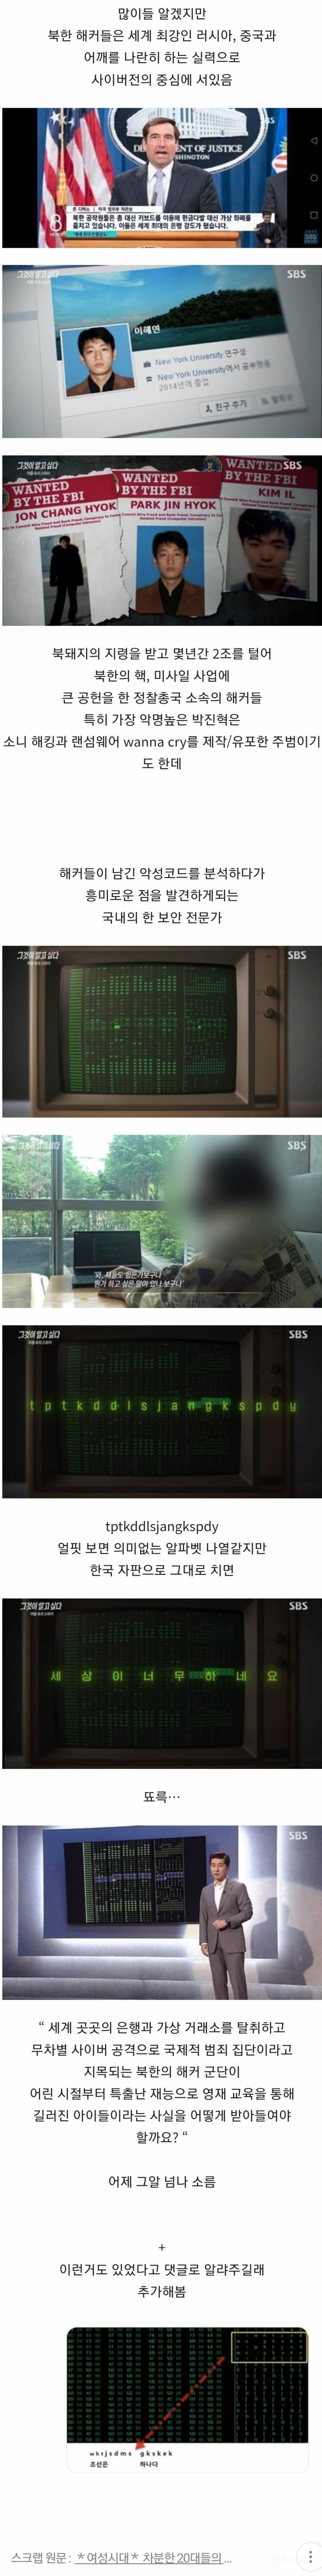 세계 곳곳의 은행 강도가 된 북한 해커들이 몰래 숨겨놓은 메세지.jpg | 인스티즈